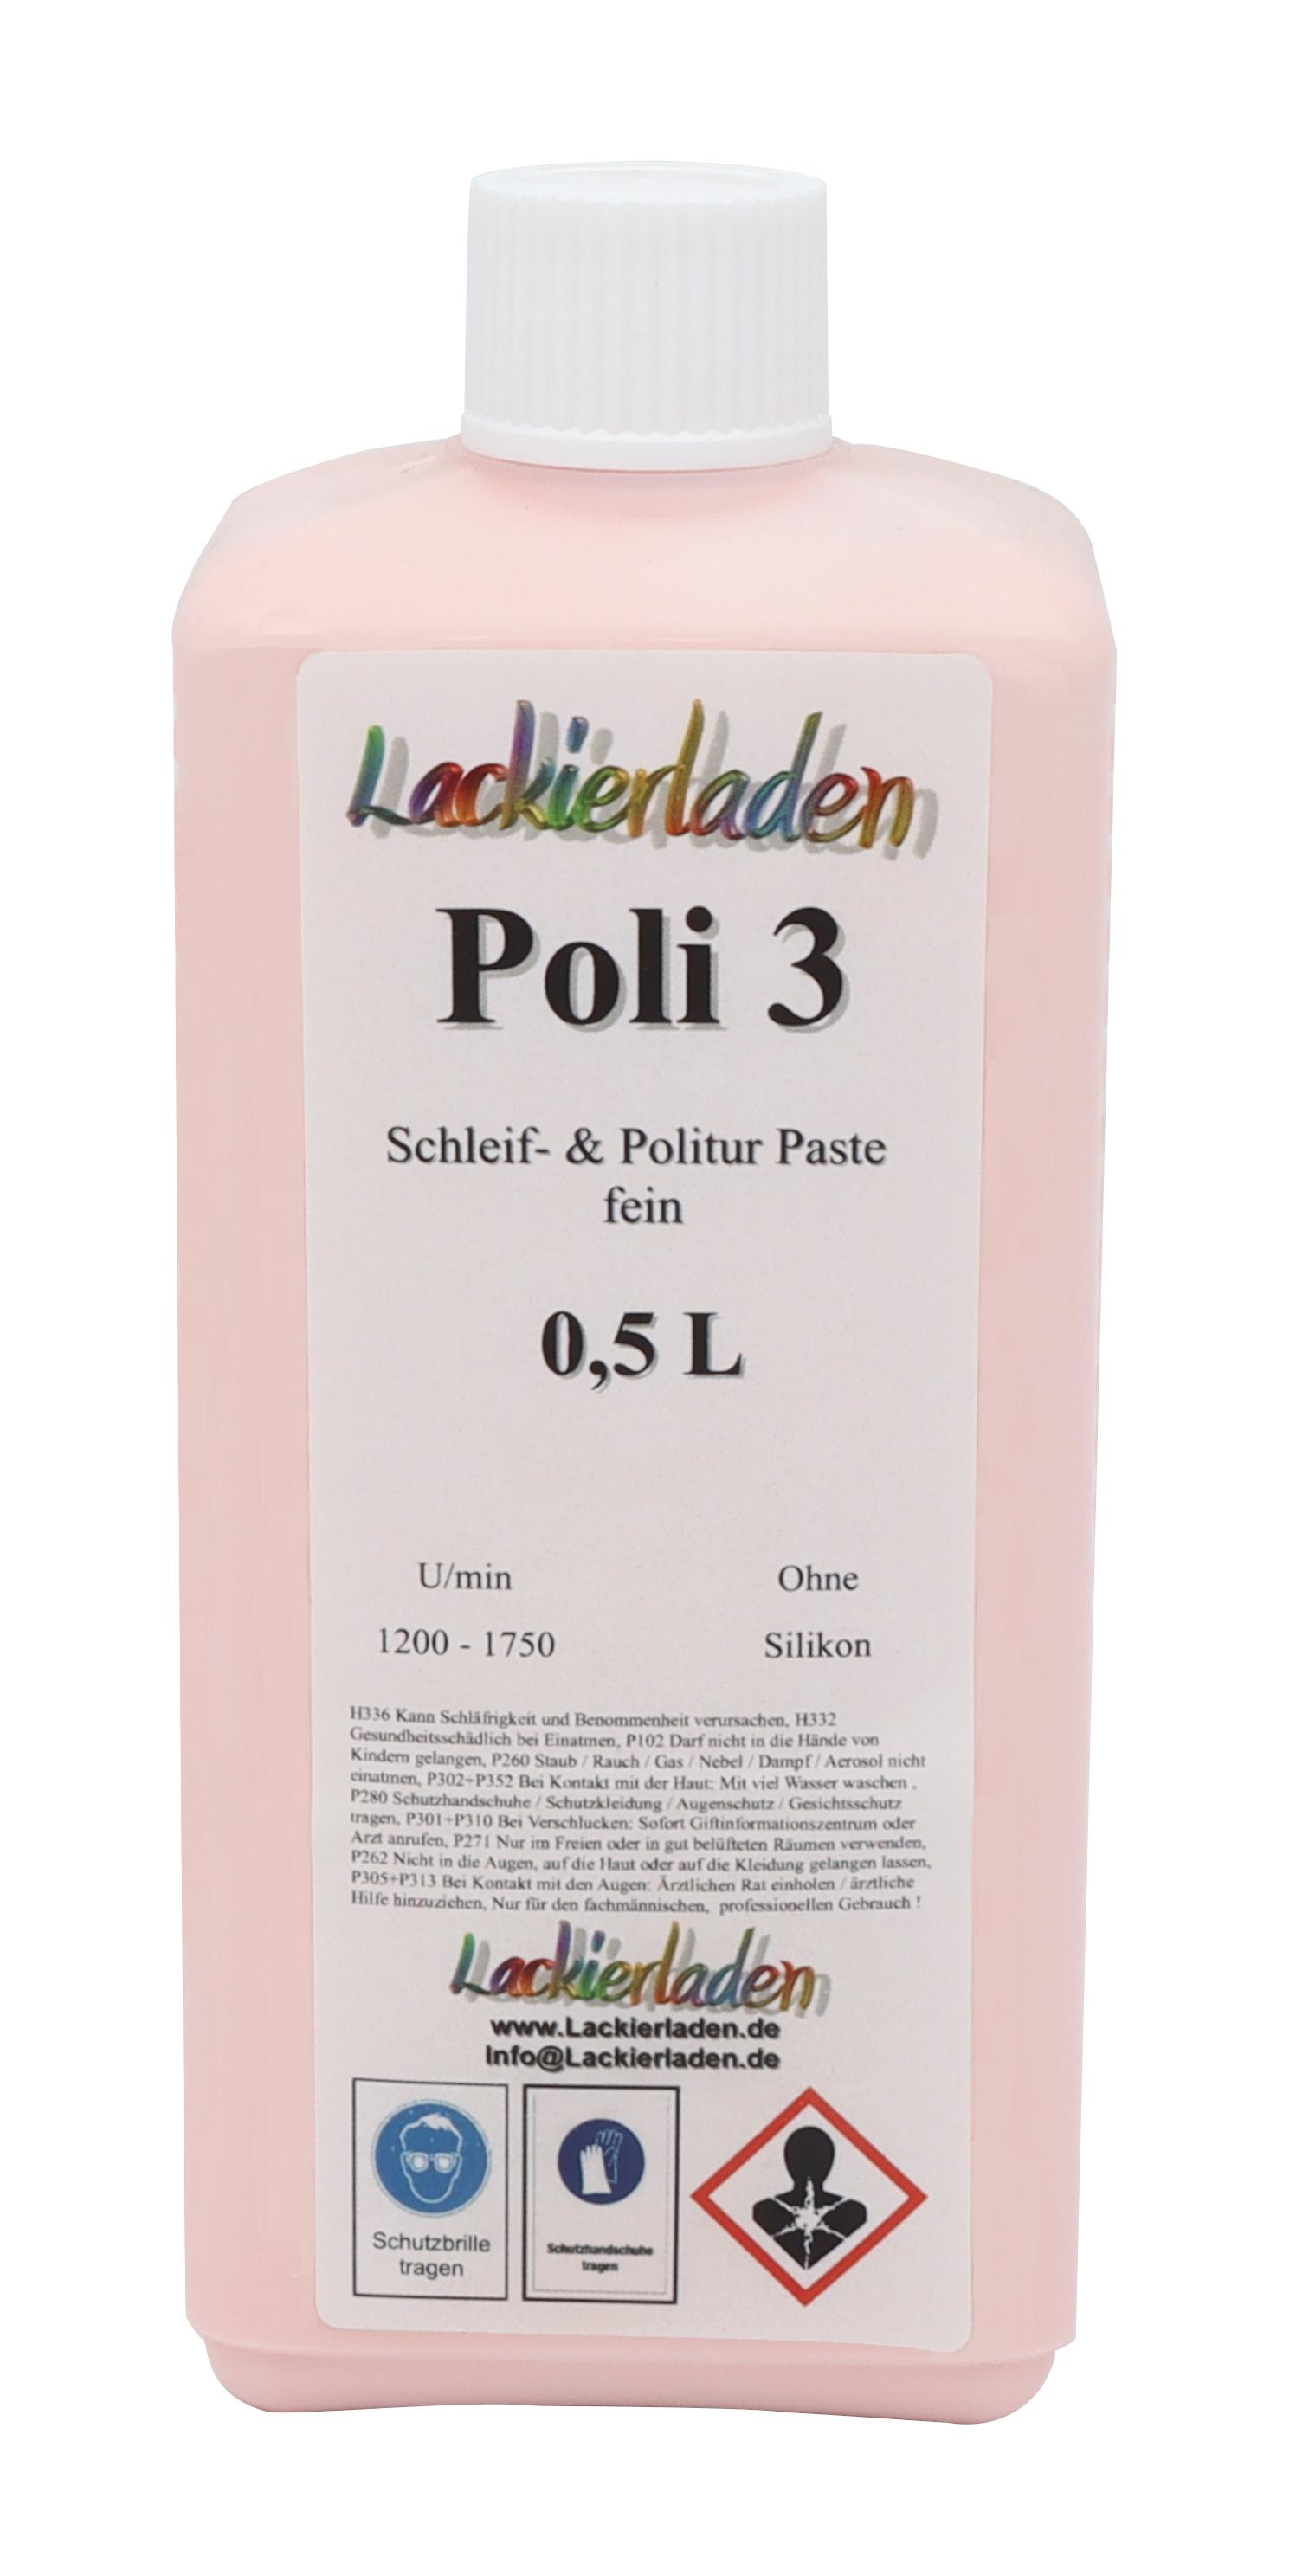 Poli 3 Schleif- & Politur Paste grob 0,5 L | Polierpaste Schleifpaste polieren